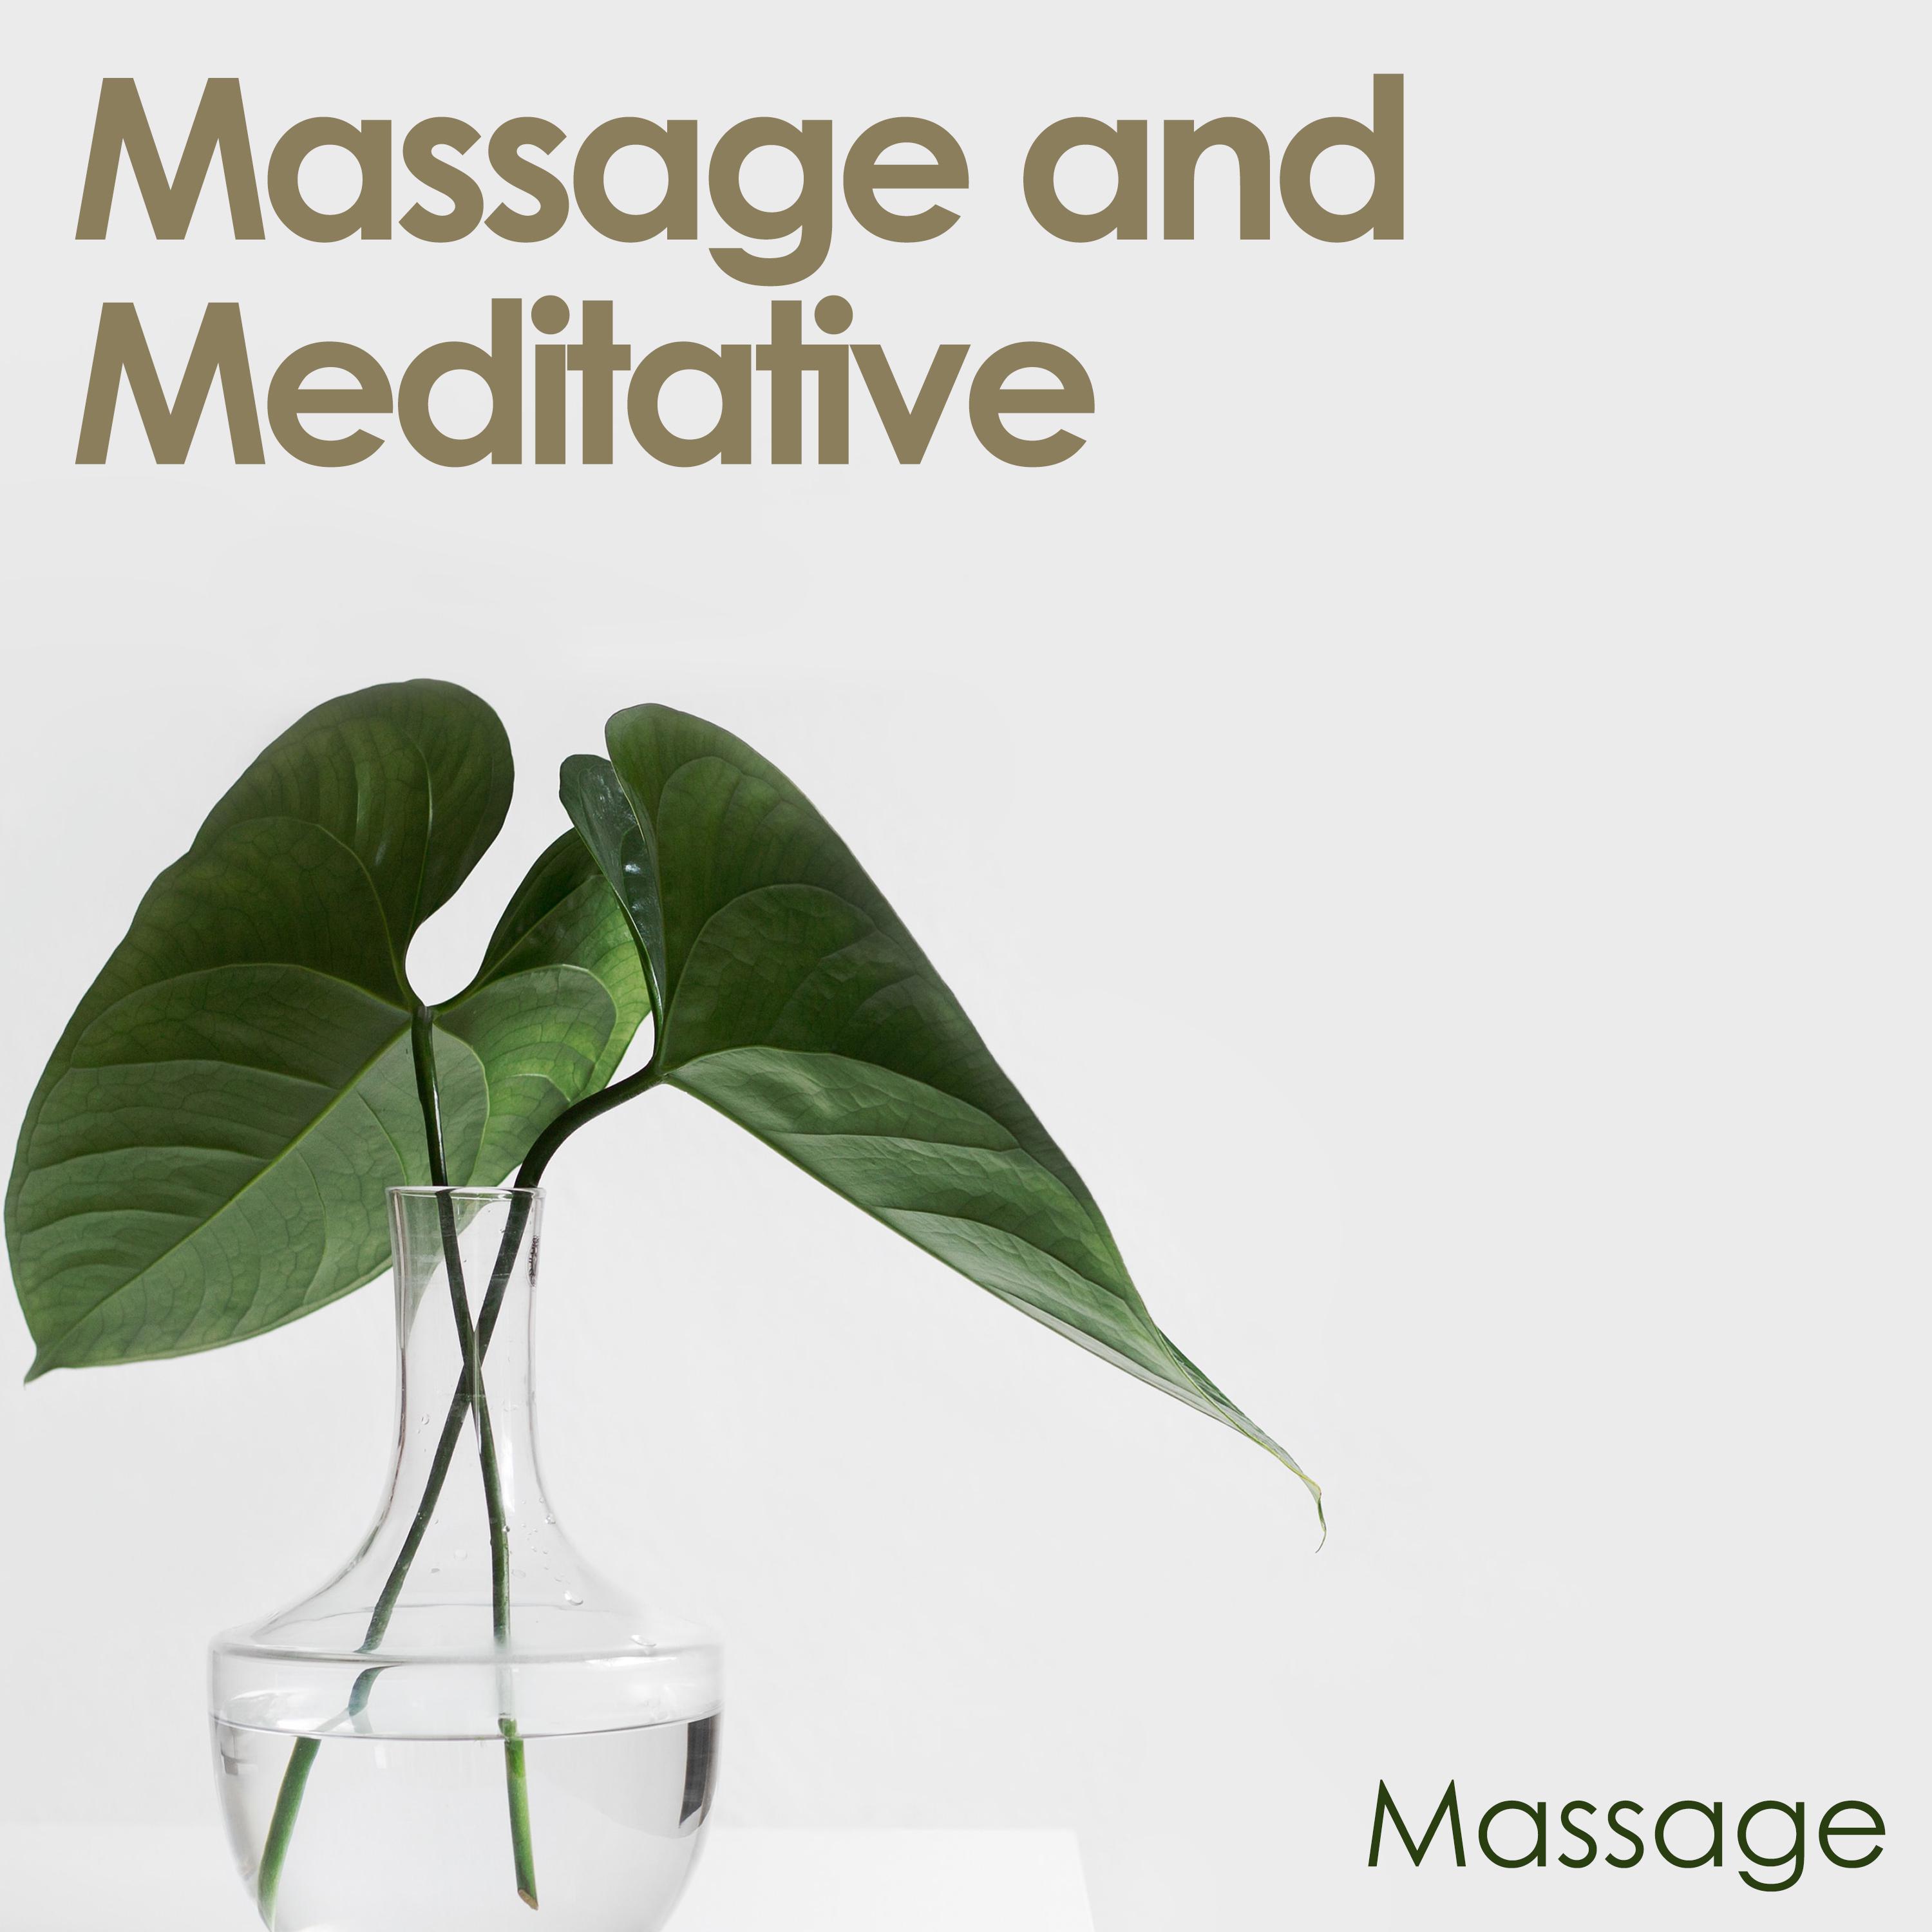 Massage and Meditative